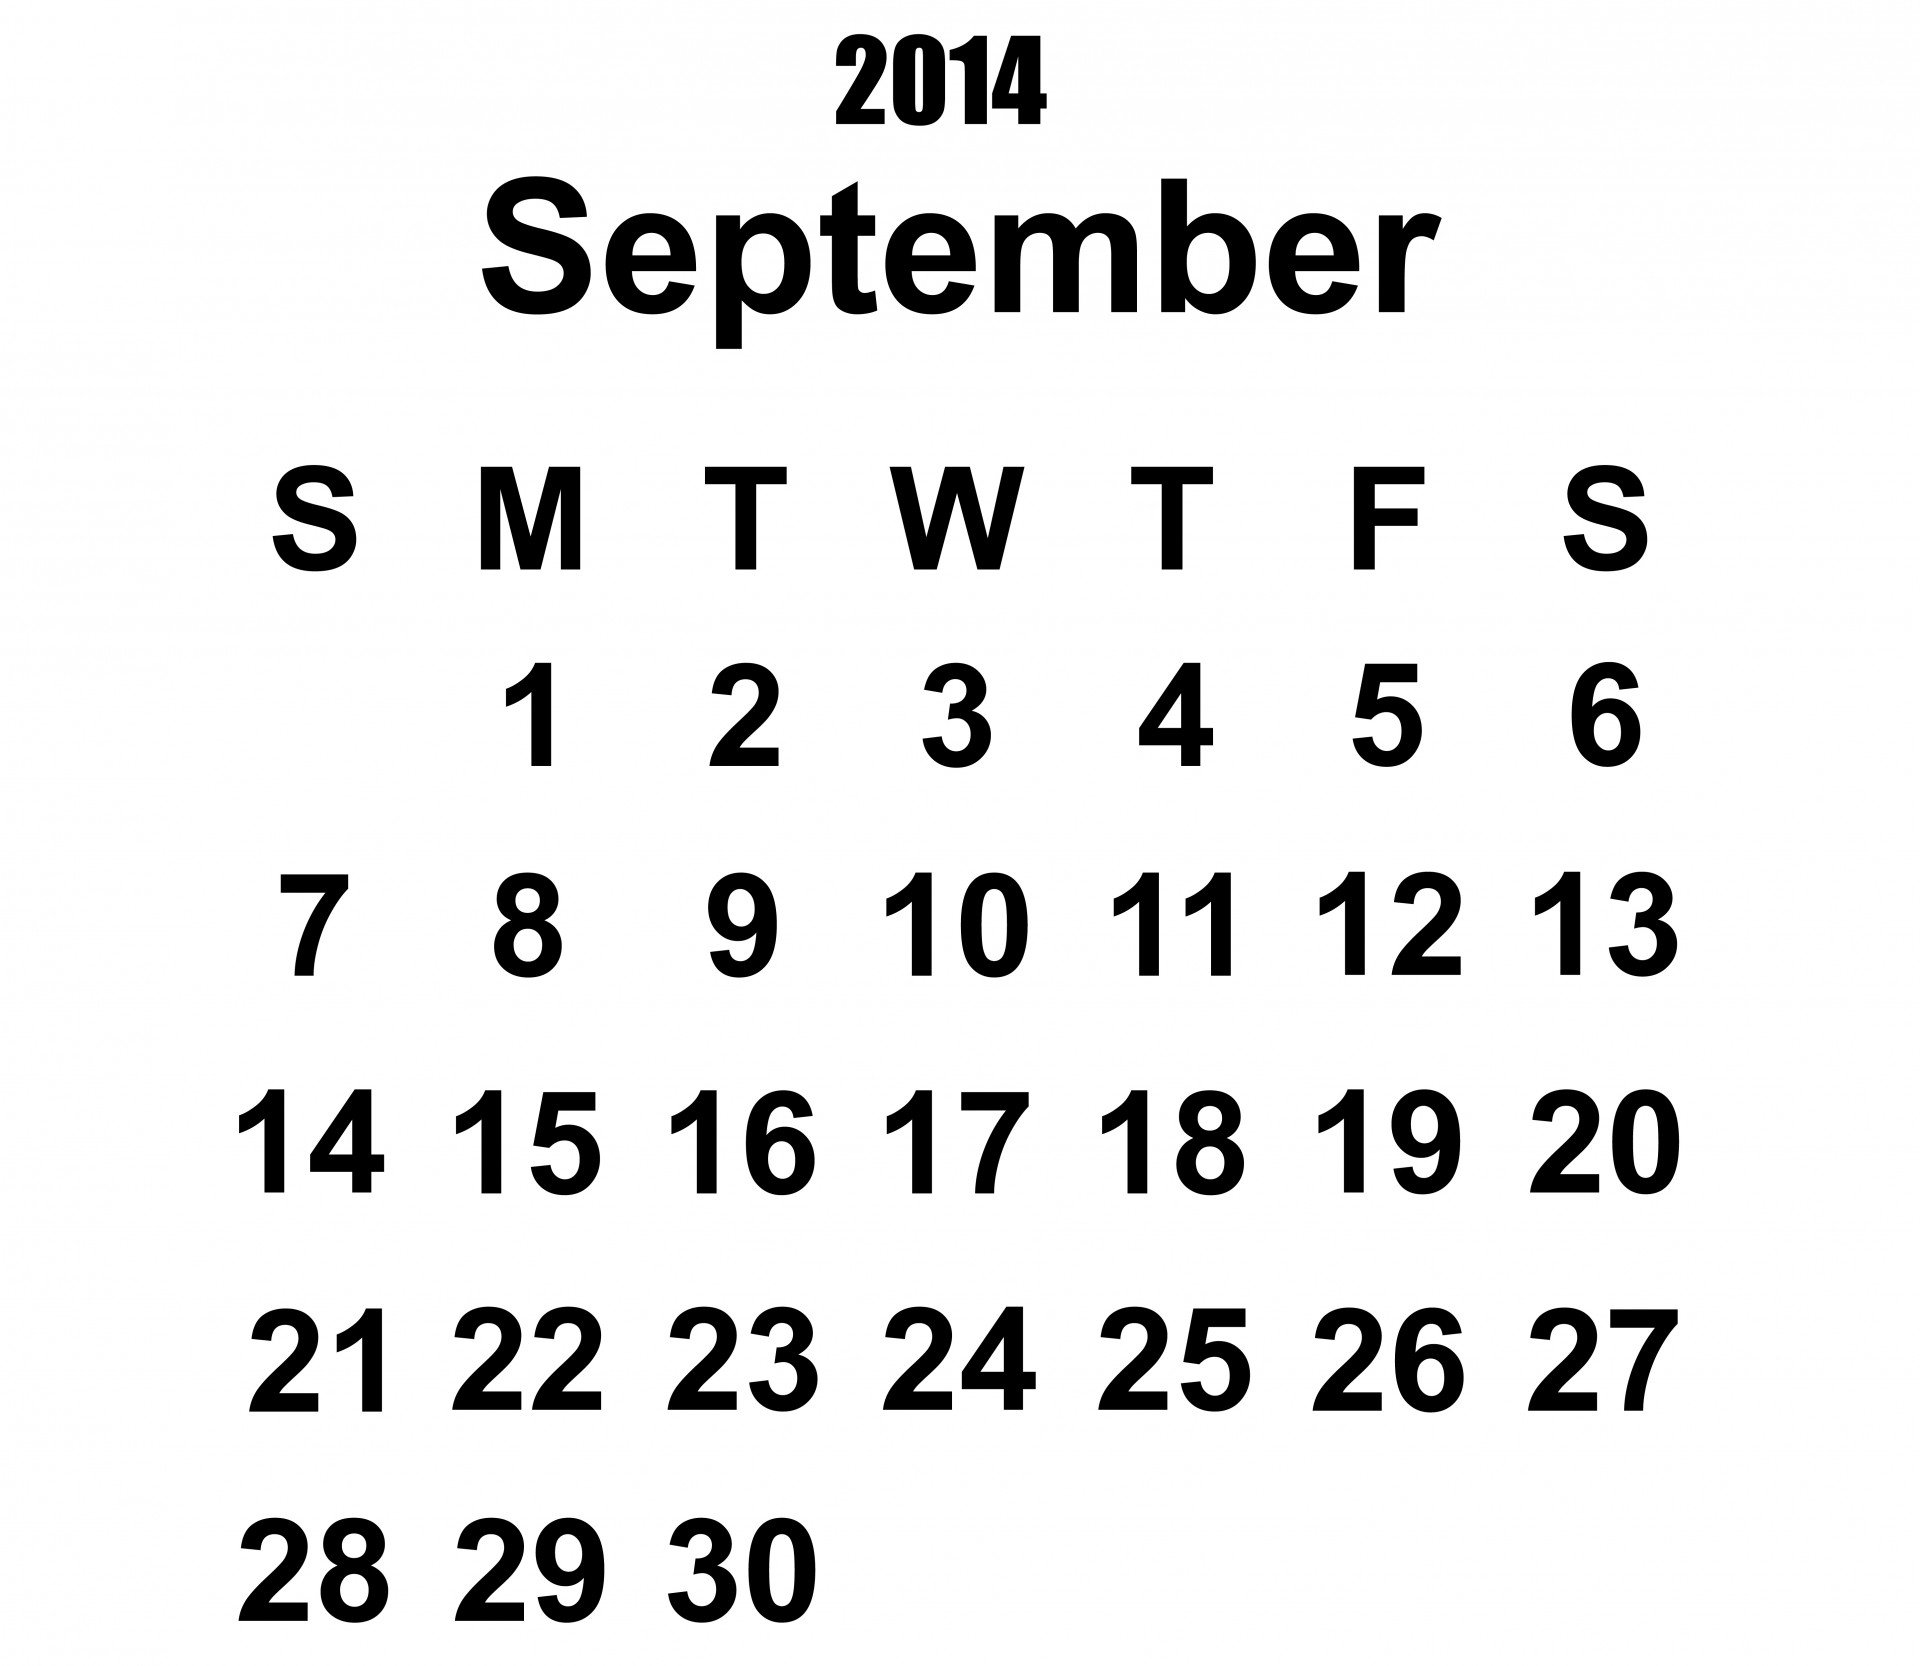 2014 calendar september 2014 calendar 2014 free photo